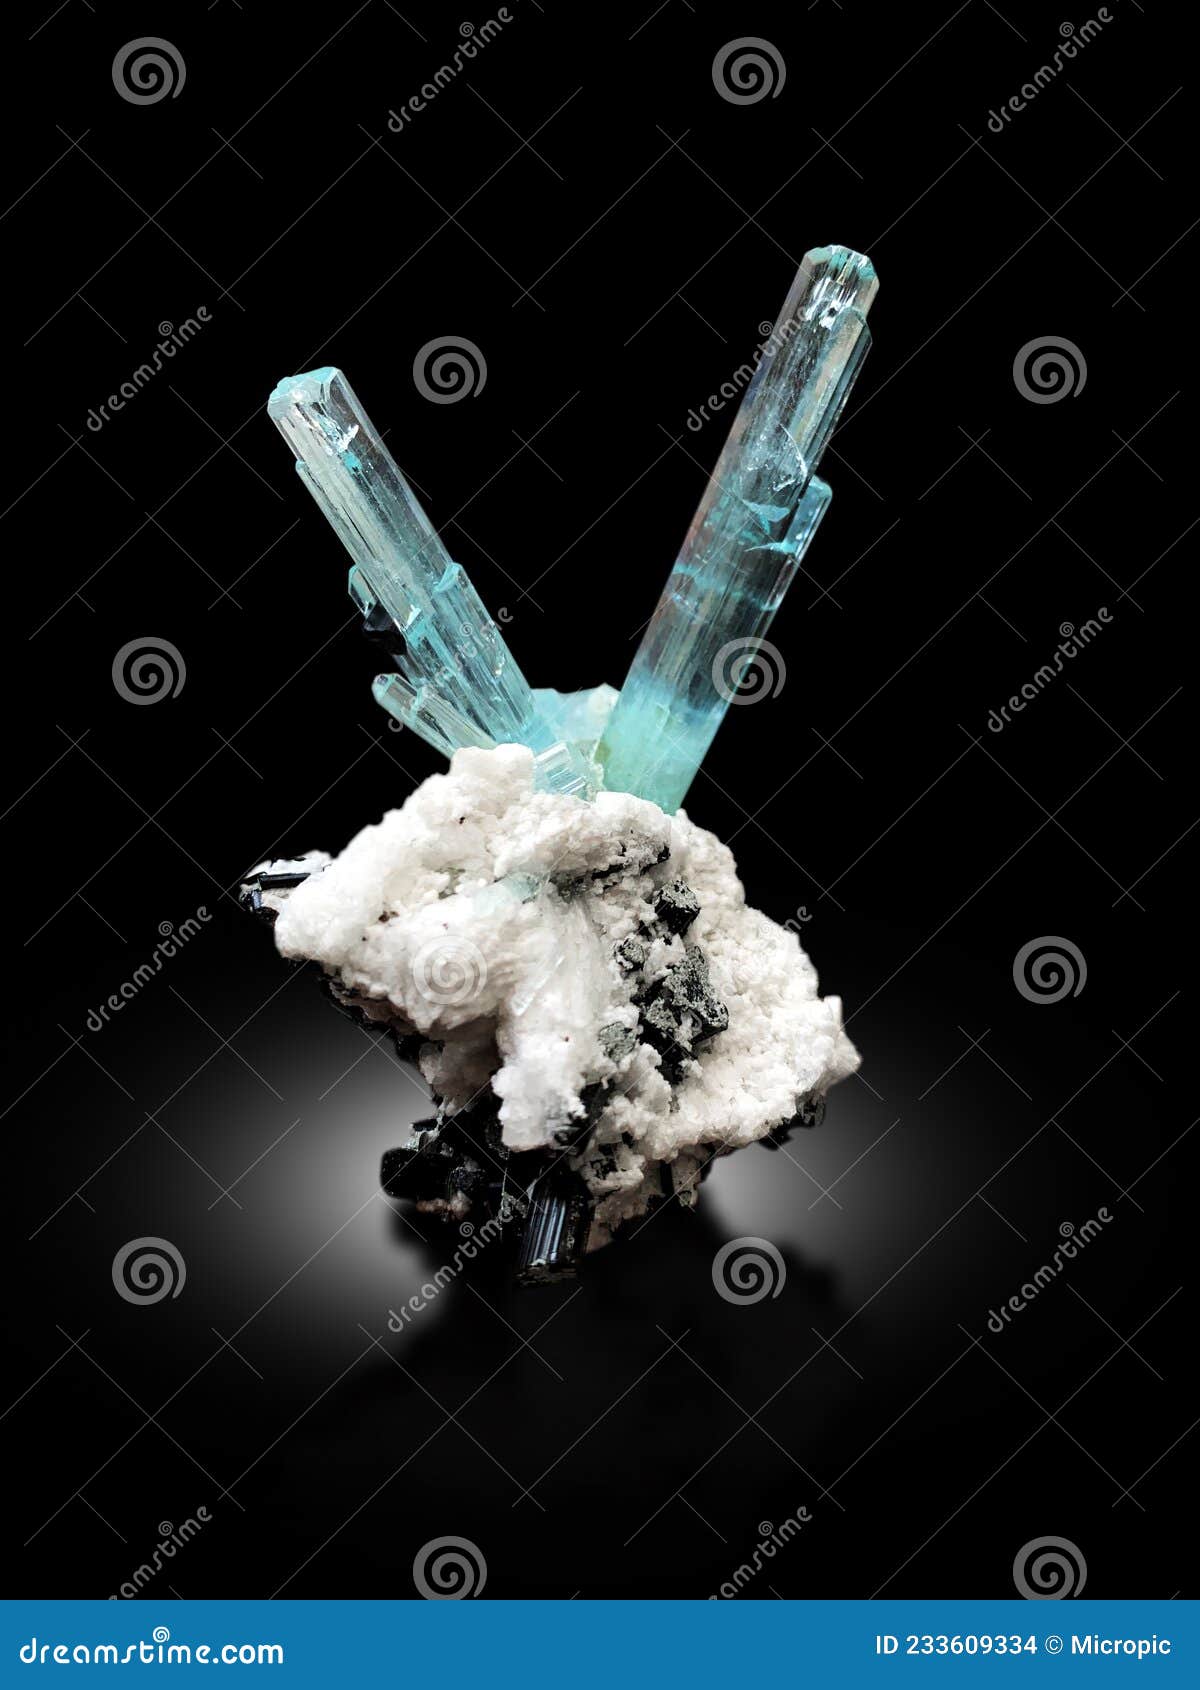 aquamarine var beryl mineral specimen from skardu shigar pakistan